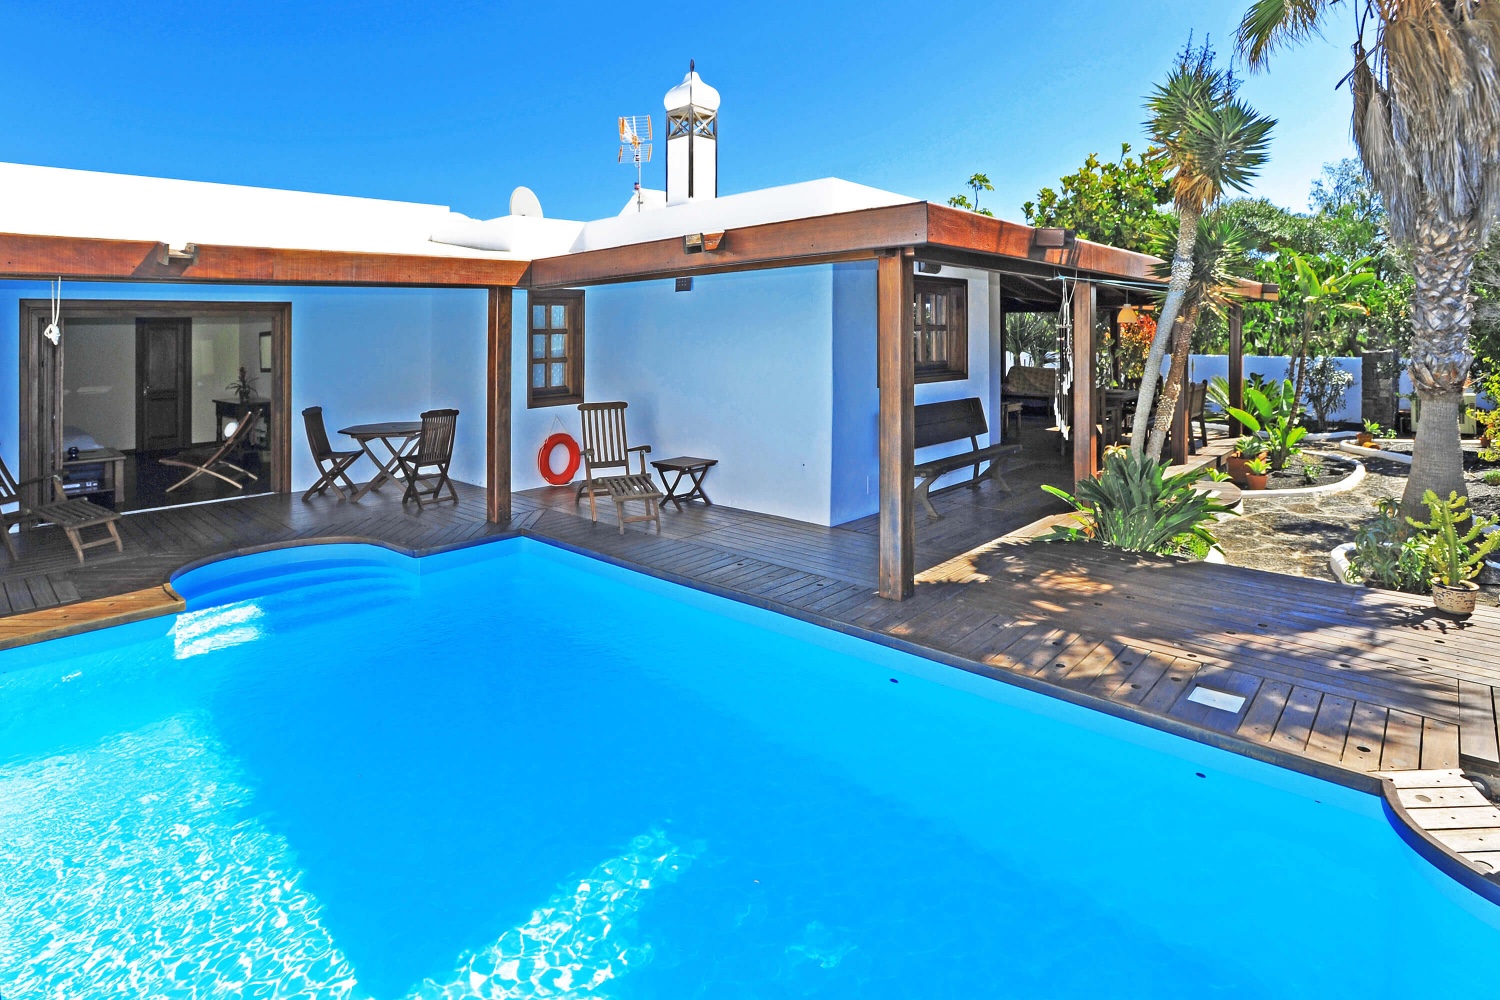 Bella casa in stile rustico per le tue vacanze a Lanzarote, con un bel giardino e piscina privata vicino alla spiaggia e al campo da golf di Costa Teguise